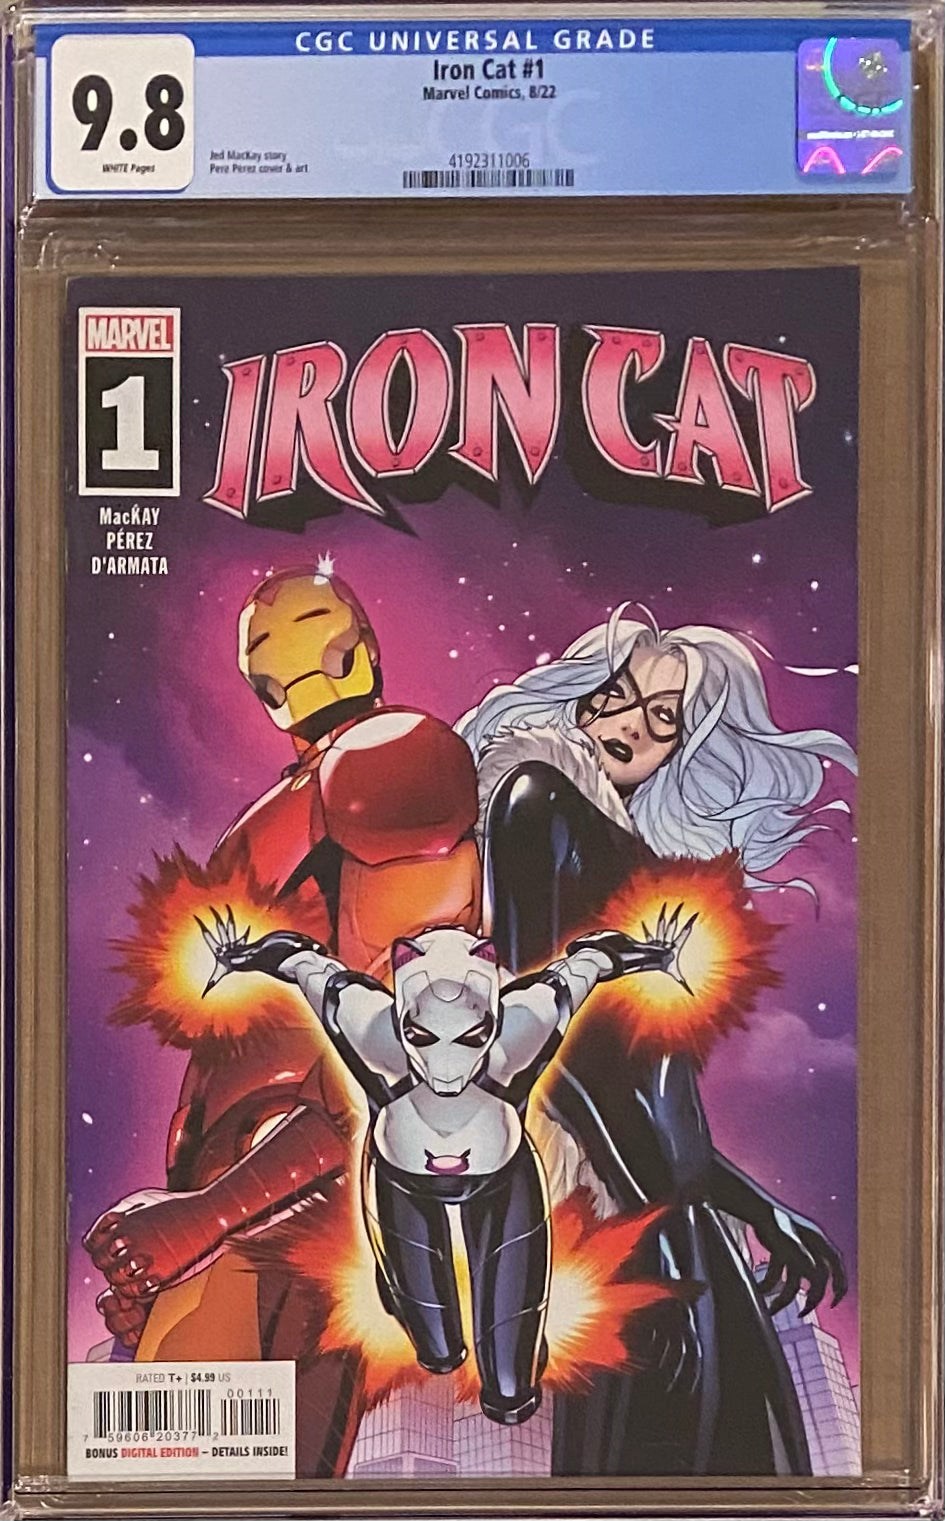 Iron Cat #1 CGC 9.8